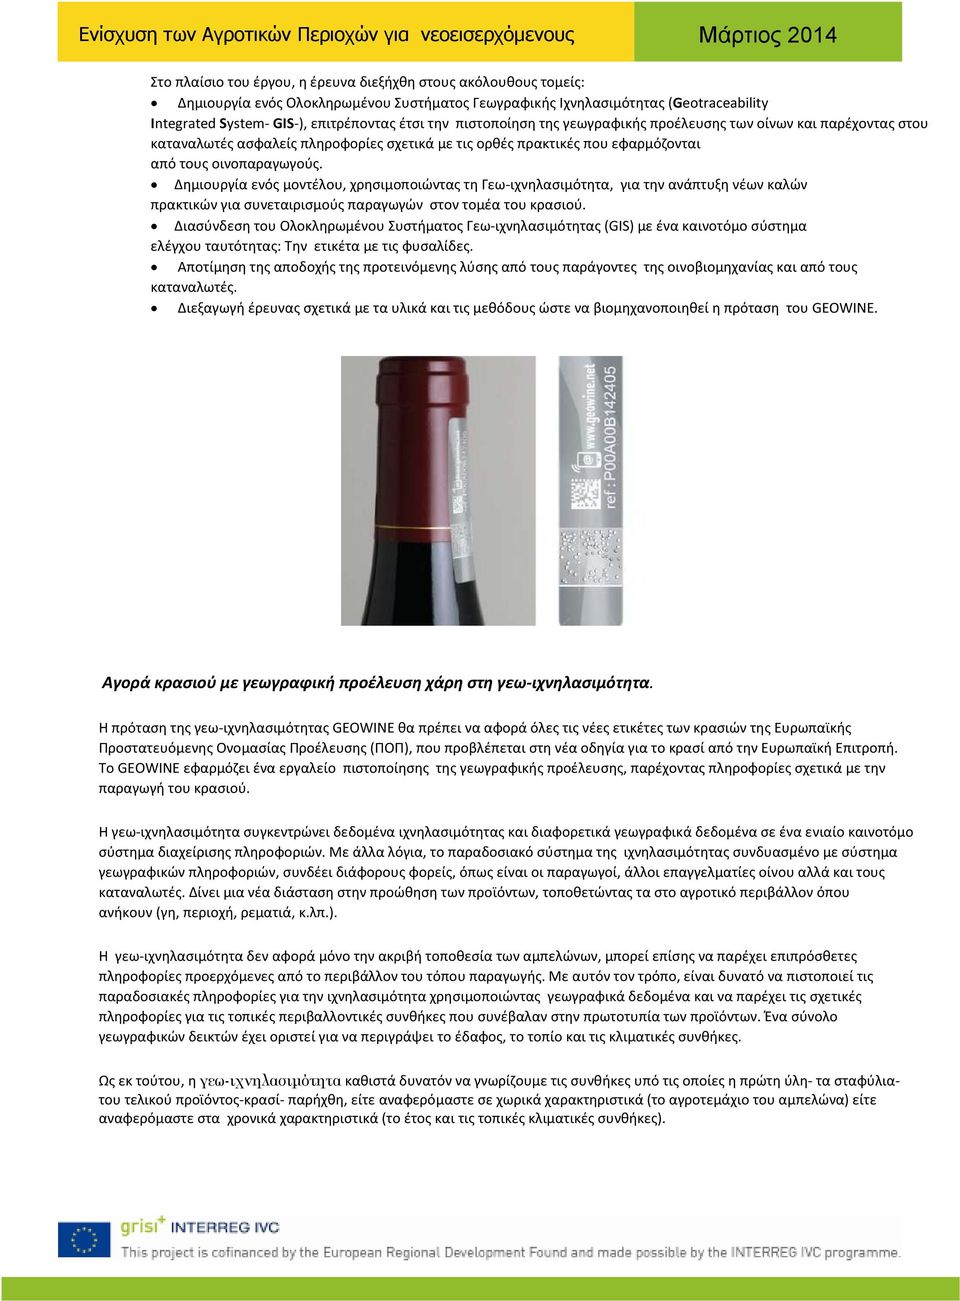 Δημιουργία ενός μοντέλου, χρησιμοποιώντας τη Γεω-ιχνηλασιμότητα, για την ανάπτυξη νέων καλών πρακτικών για συνεταιρισμούς παραγωγών στον τομέα του κρασιού.